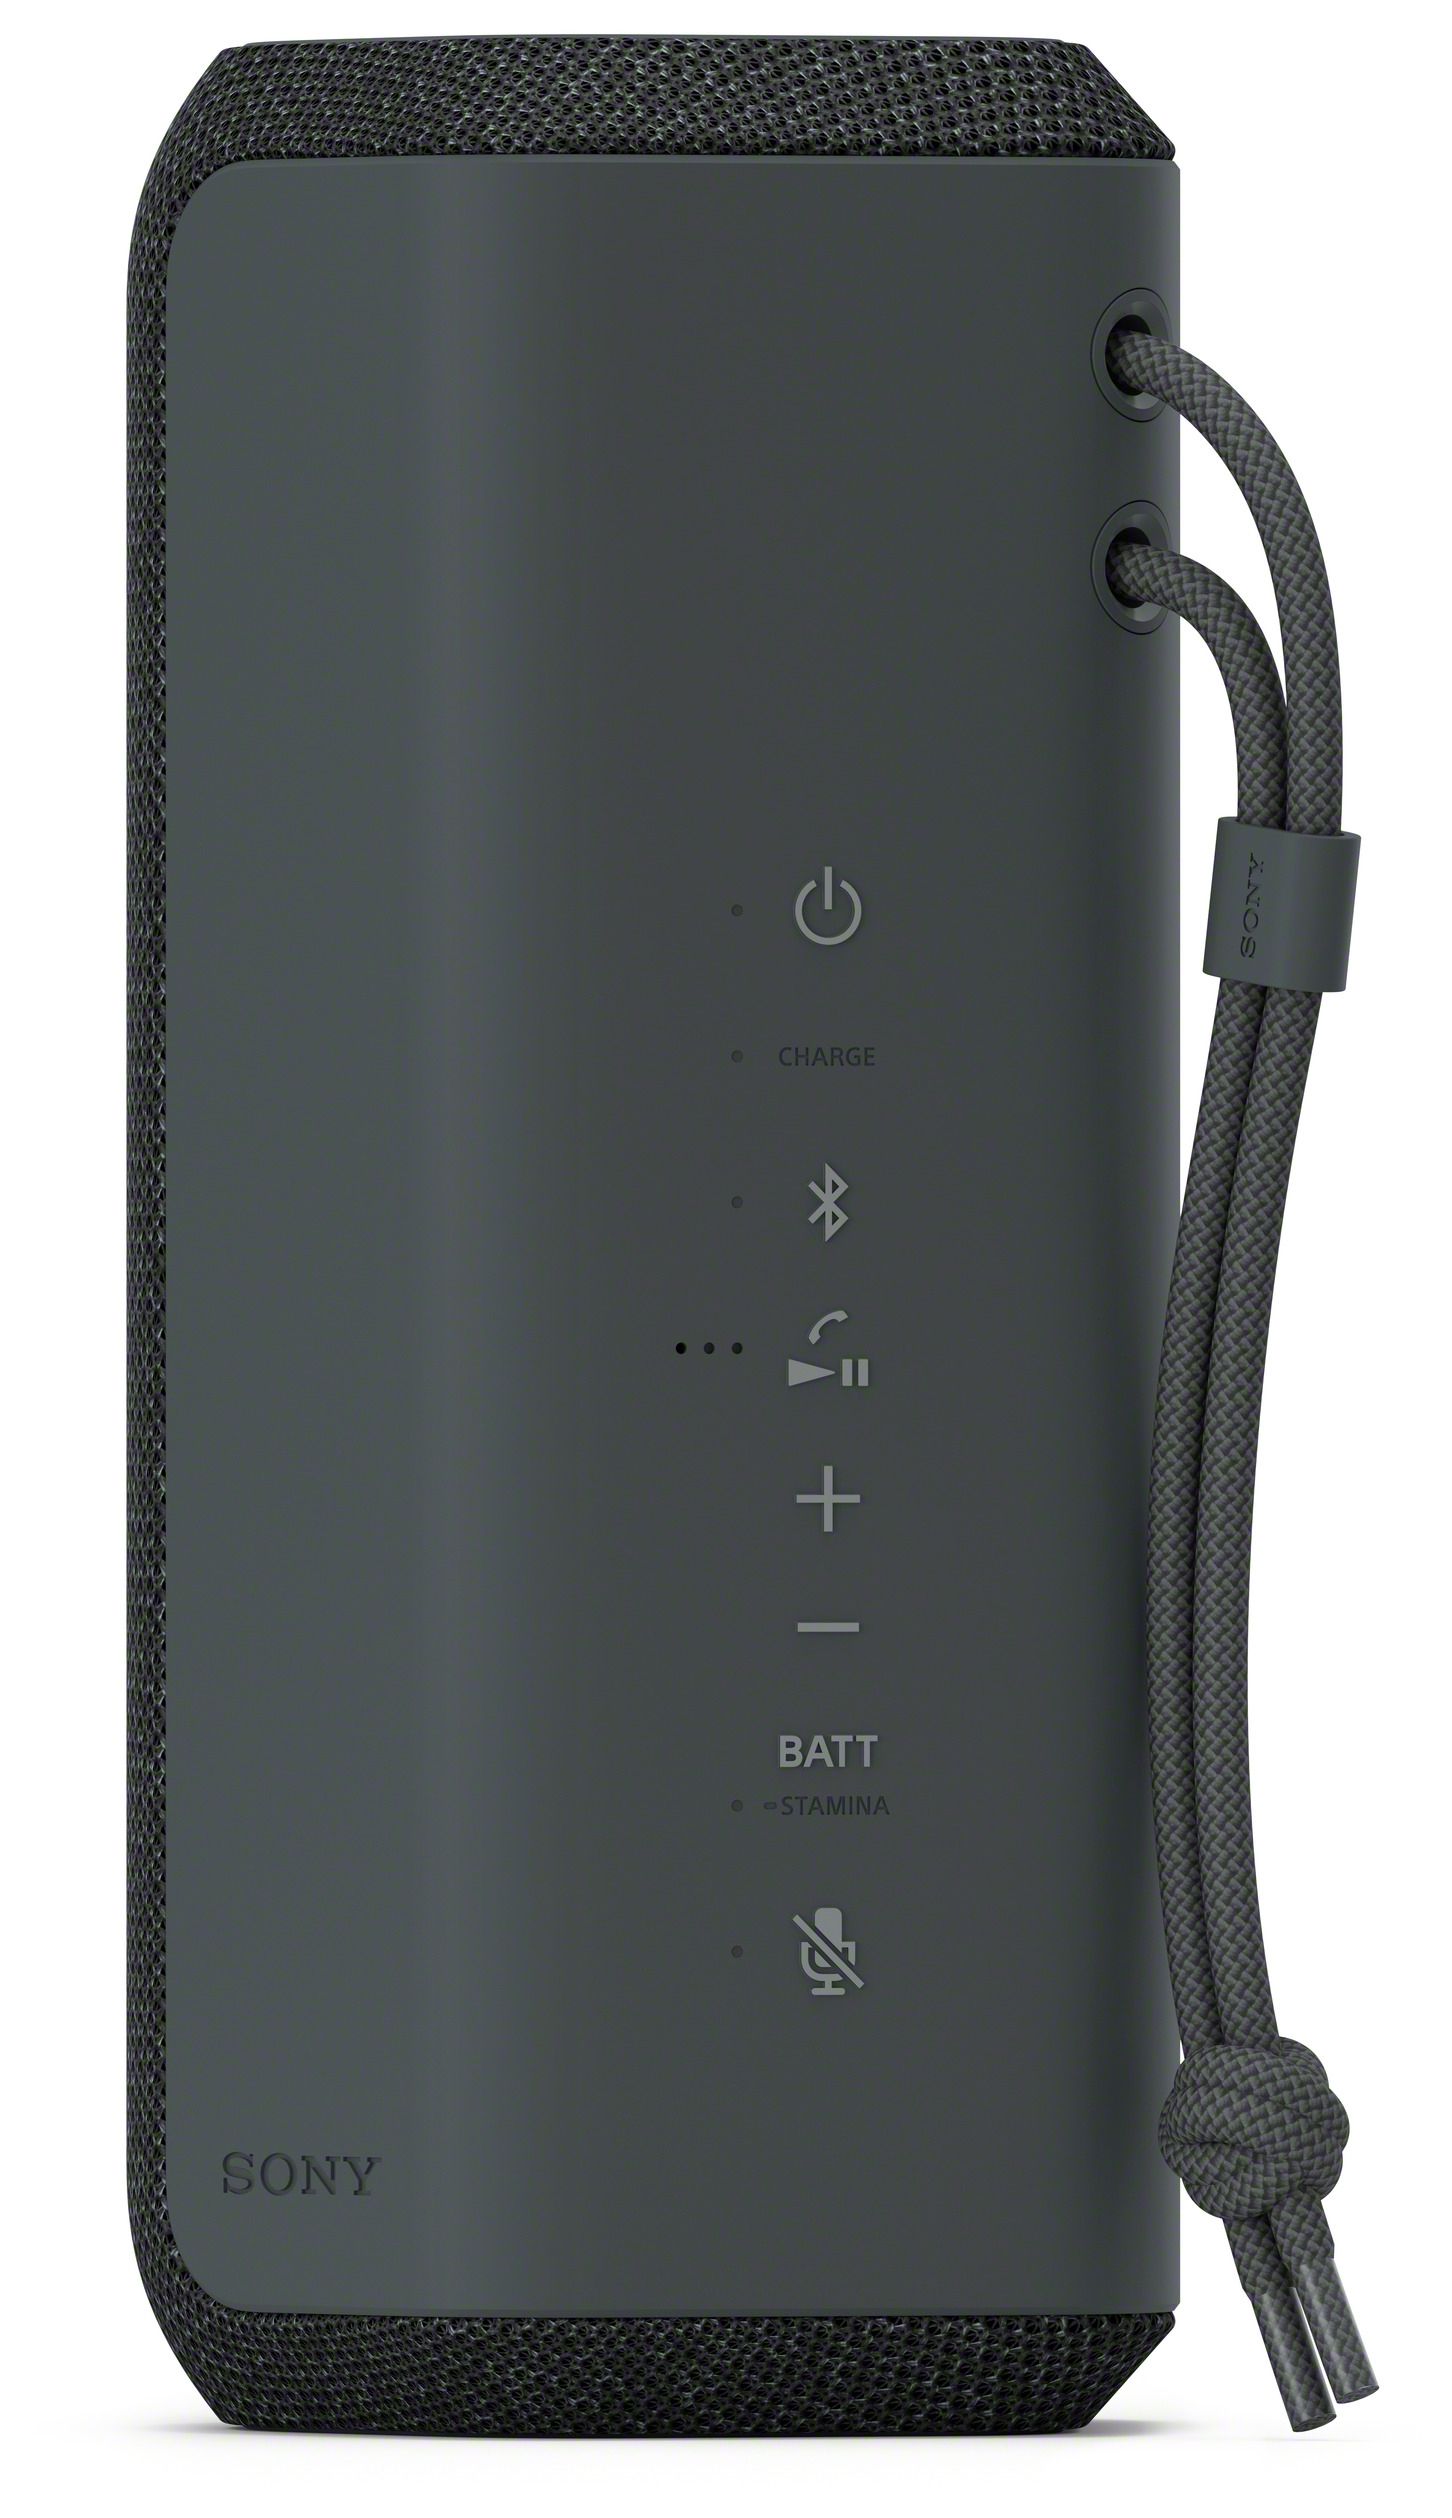 von expert Lautsprecher IP67 SRS-XE200 Bluetooth Sony Technomarkt (Schwarz)